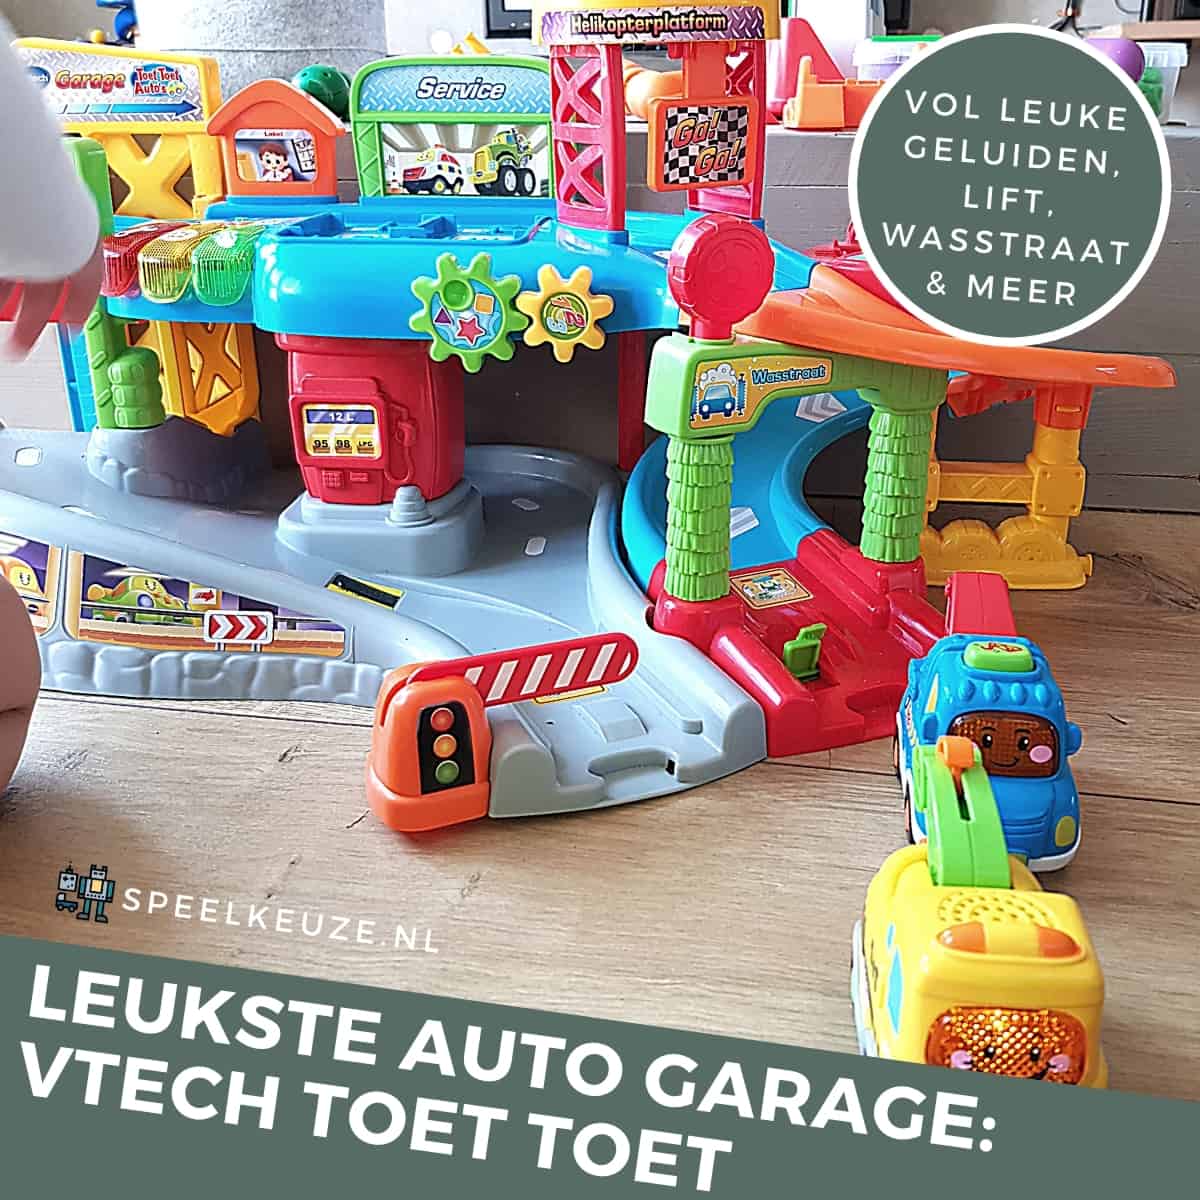 El mejor garaje para automóviles: VTech Toet Toet Auto Garage